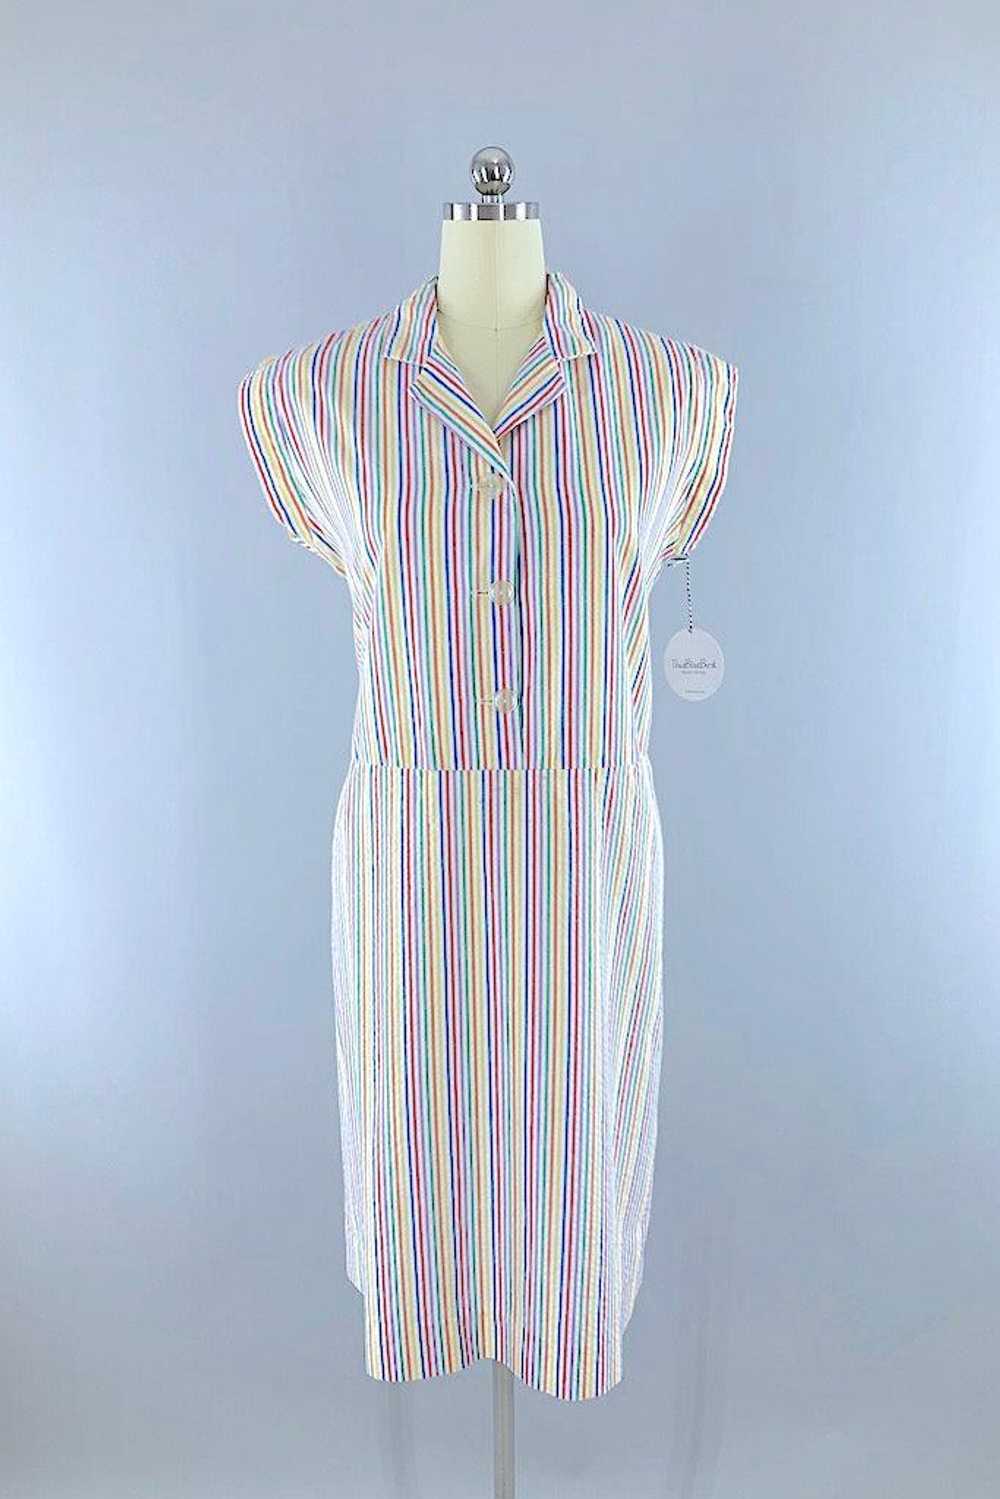 Vintage Rainbow Seersucker Dress - image 1